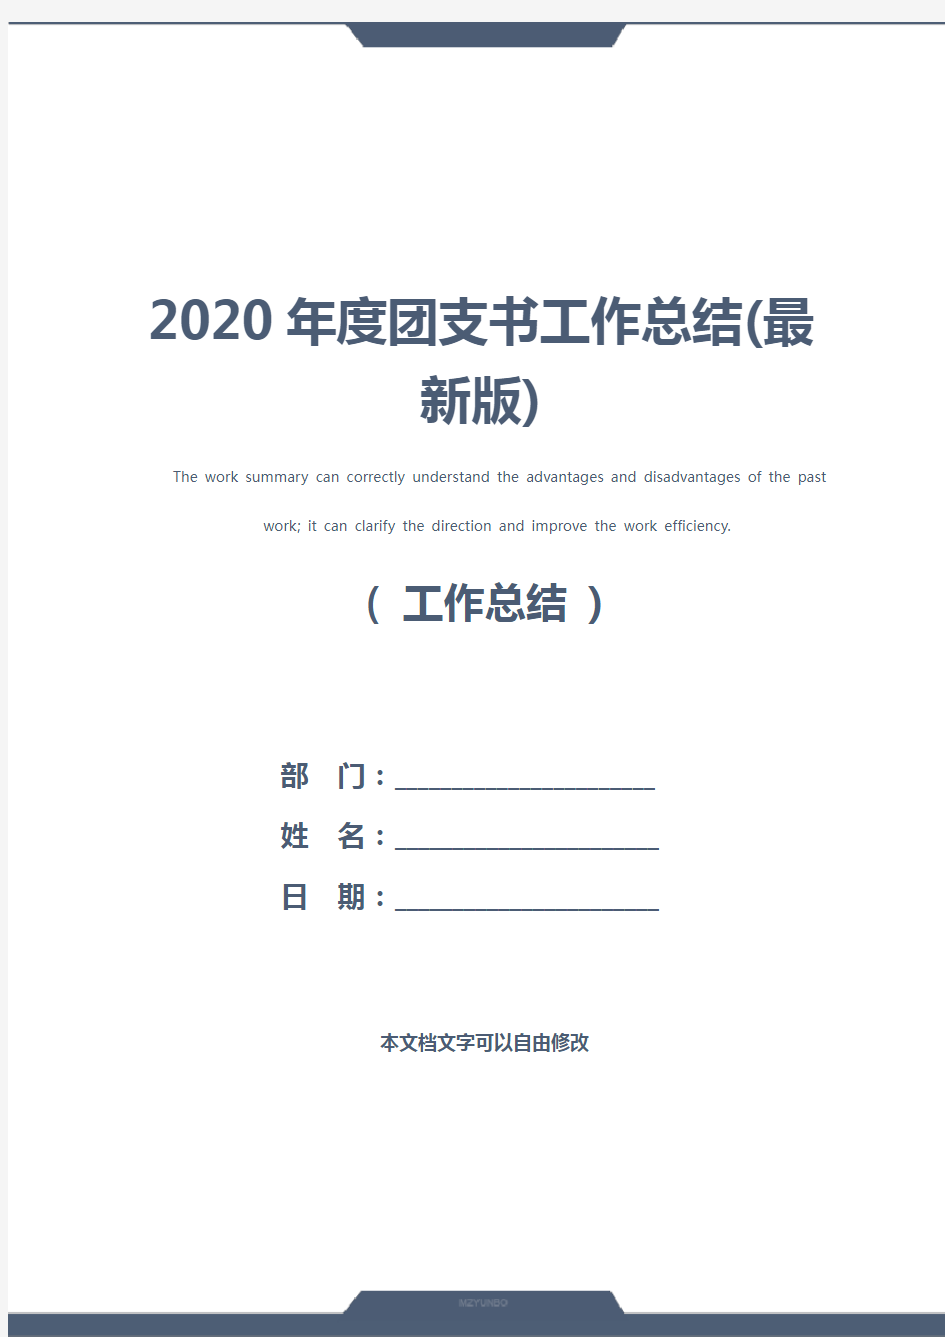 2020年度团支书工作总结(最新版)